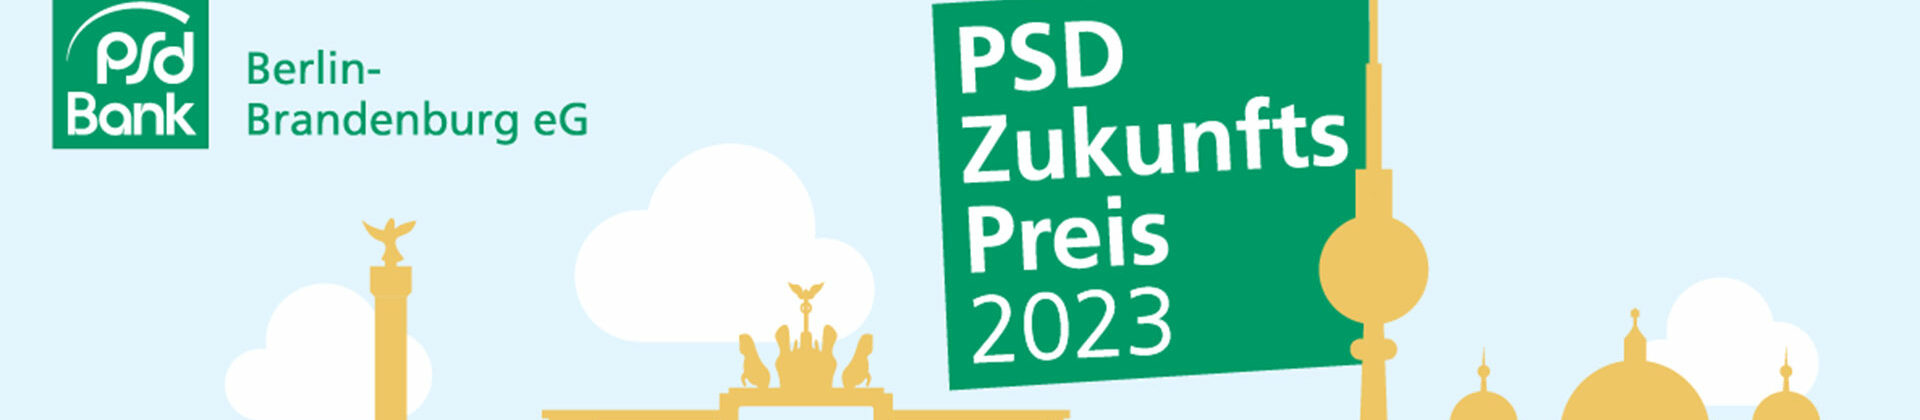 banner-rlb-psdzukunftspreis2023